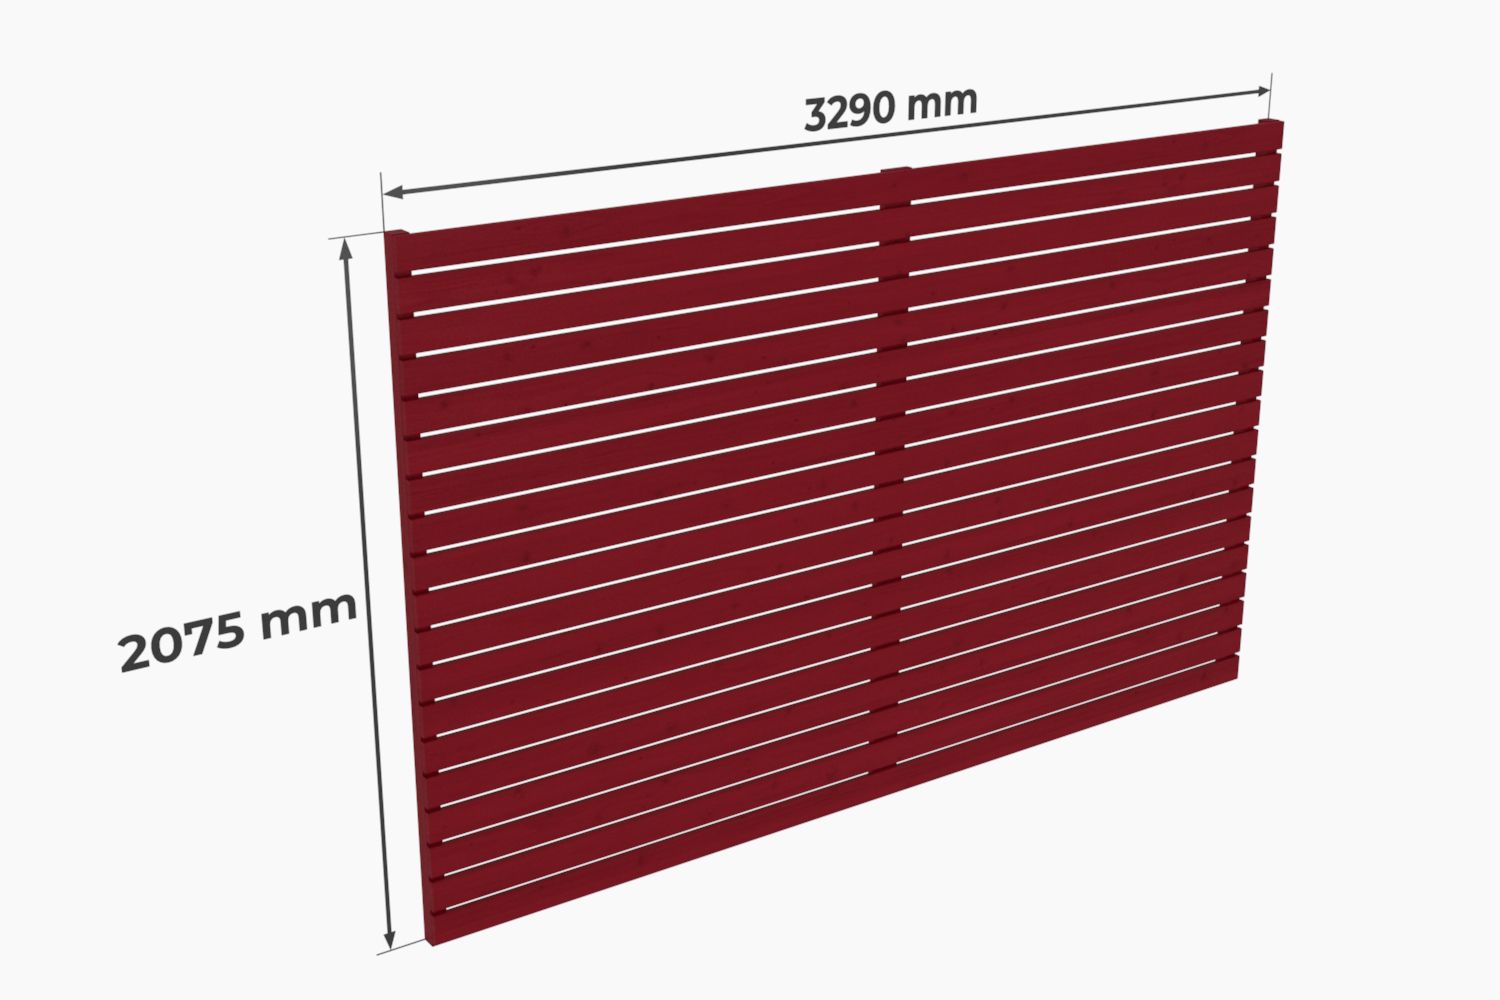 Achterwand voor carport "Stable" 42 m² gemaakt van vurenhout, kleur: oxide rood